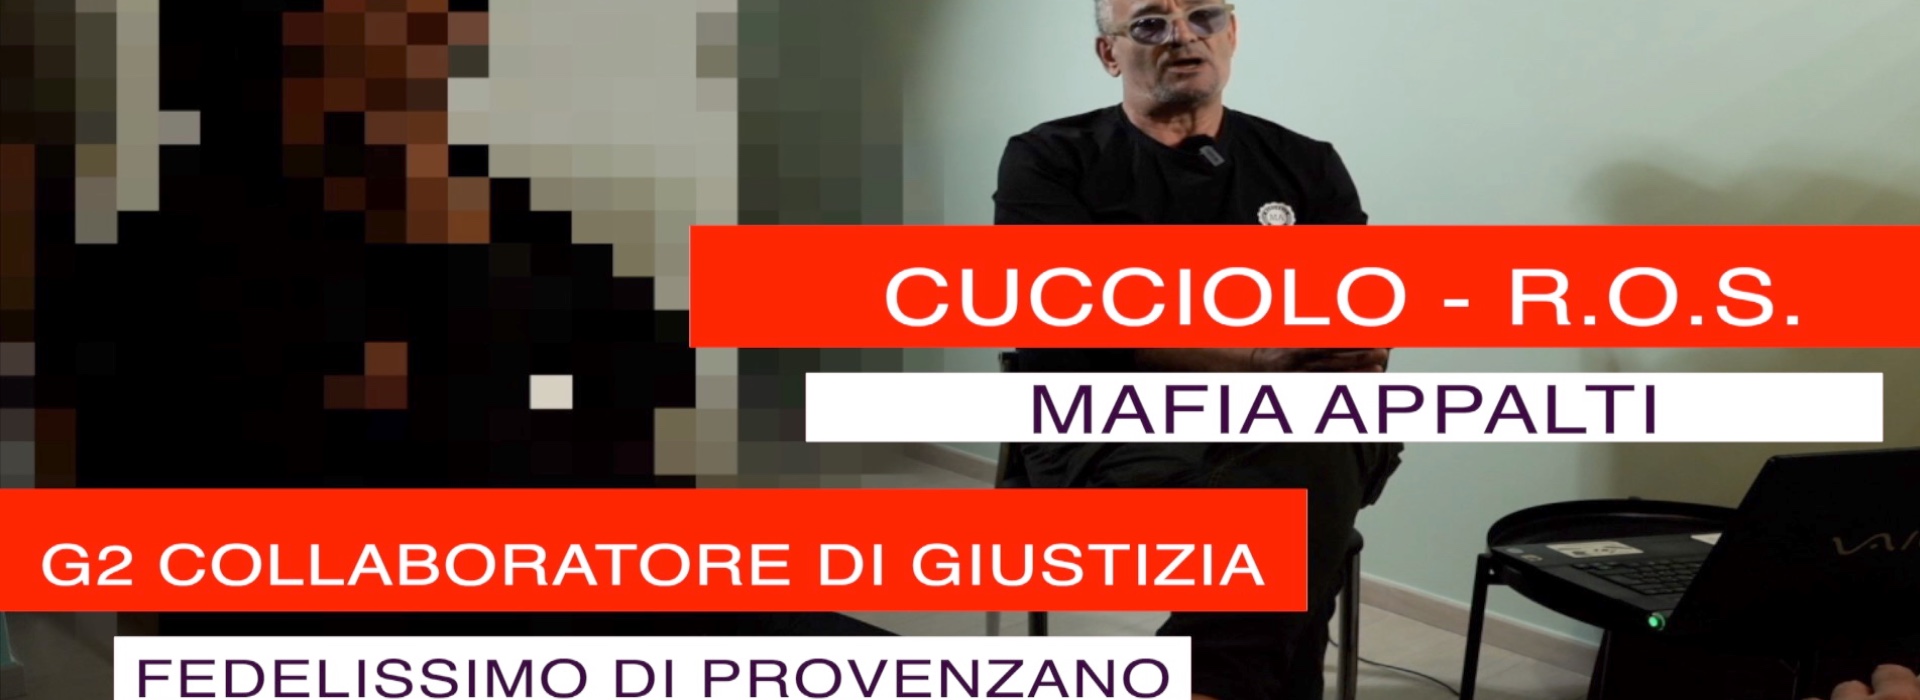 Mafia appalti: l'informativa dei Ros sui grandi nomi della finanza e dell'impresa italiana